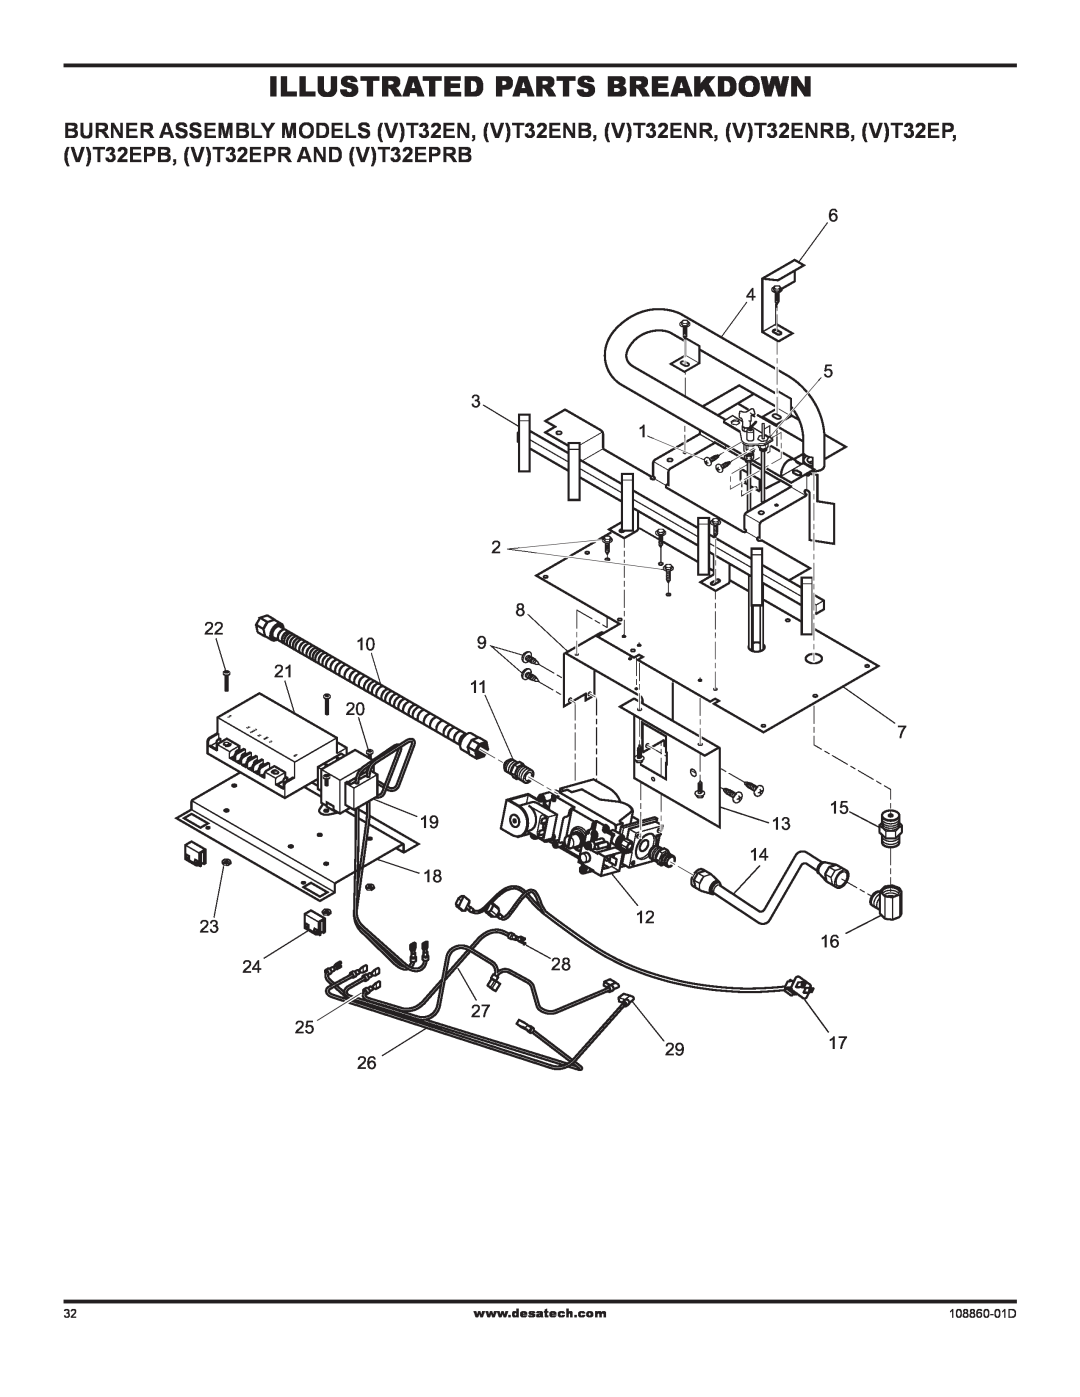 Desa (V)T32EN installation manual illustrated parts breakdown, 108860-01D 